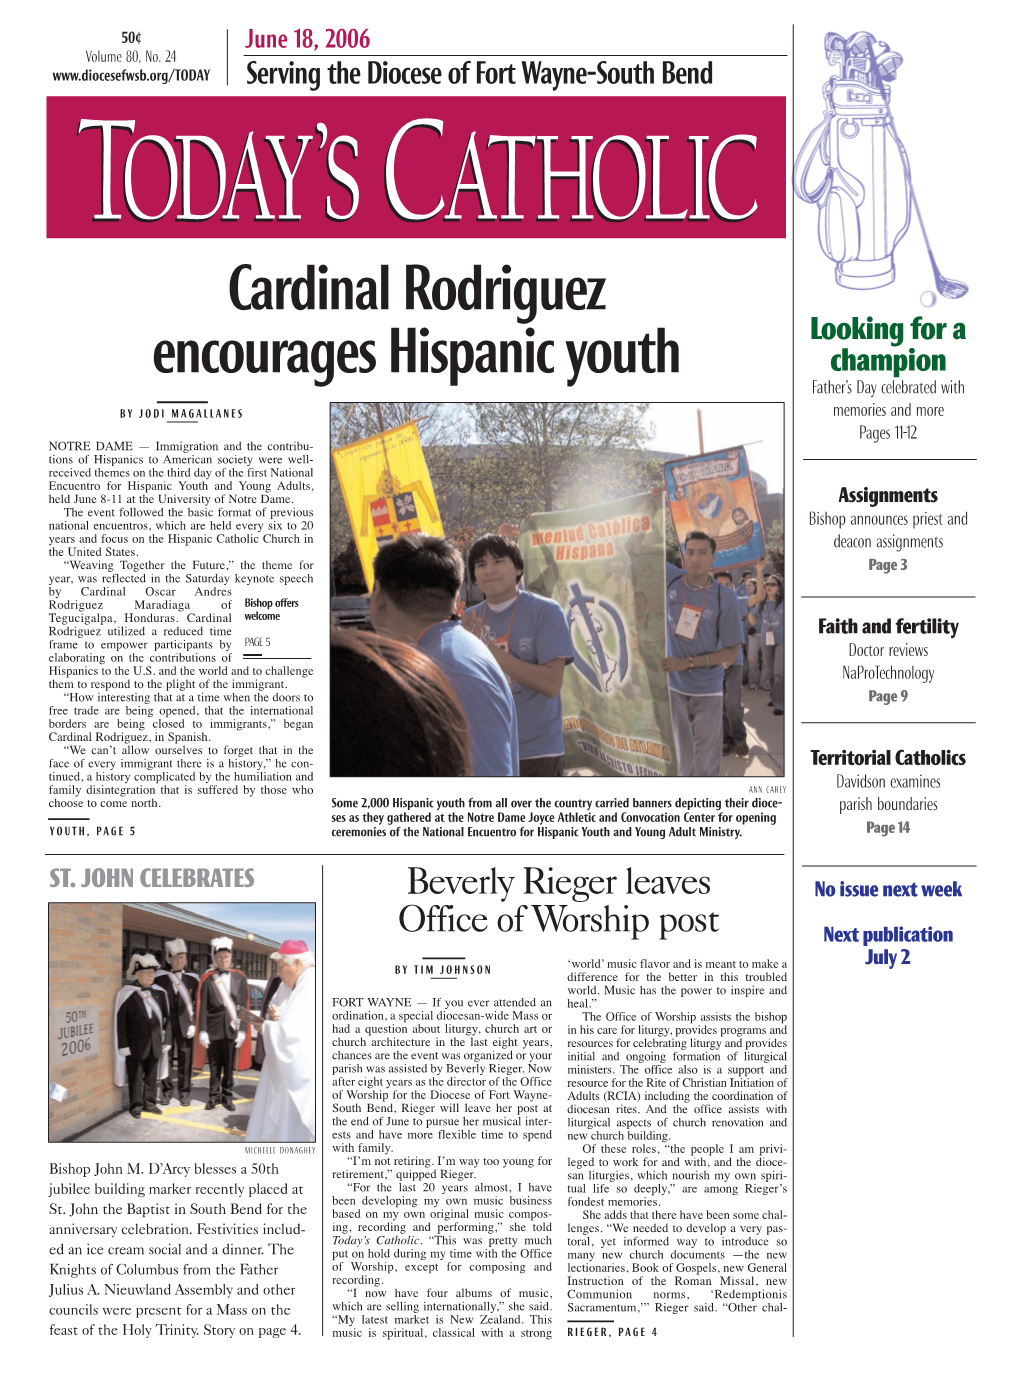 Cardinal Rodriguez Encourages Hispanic Youth